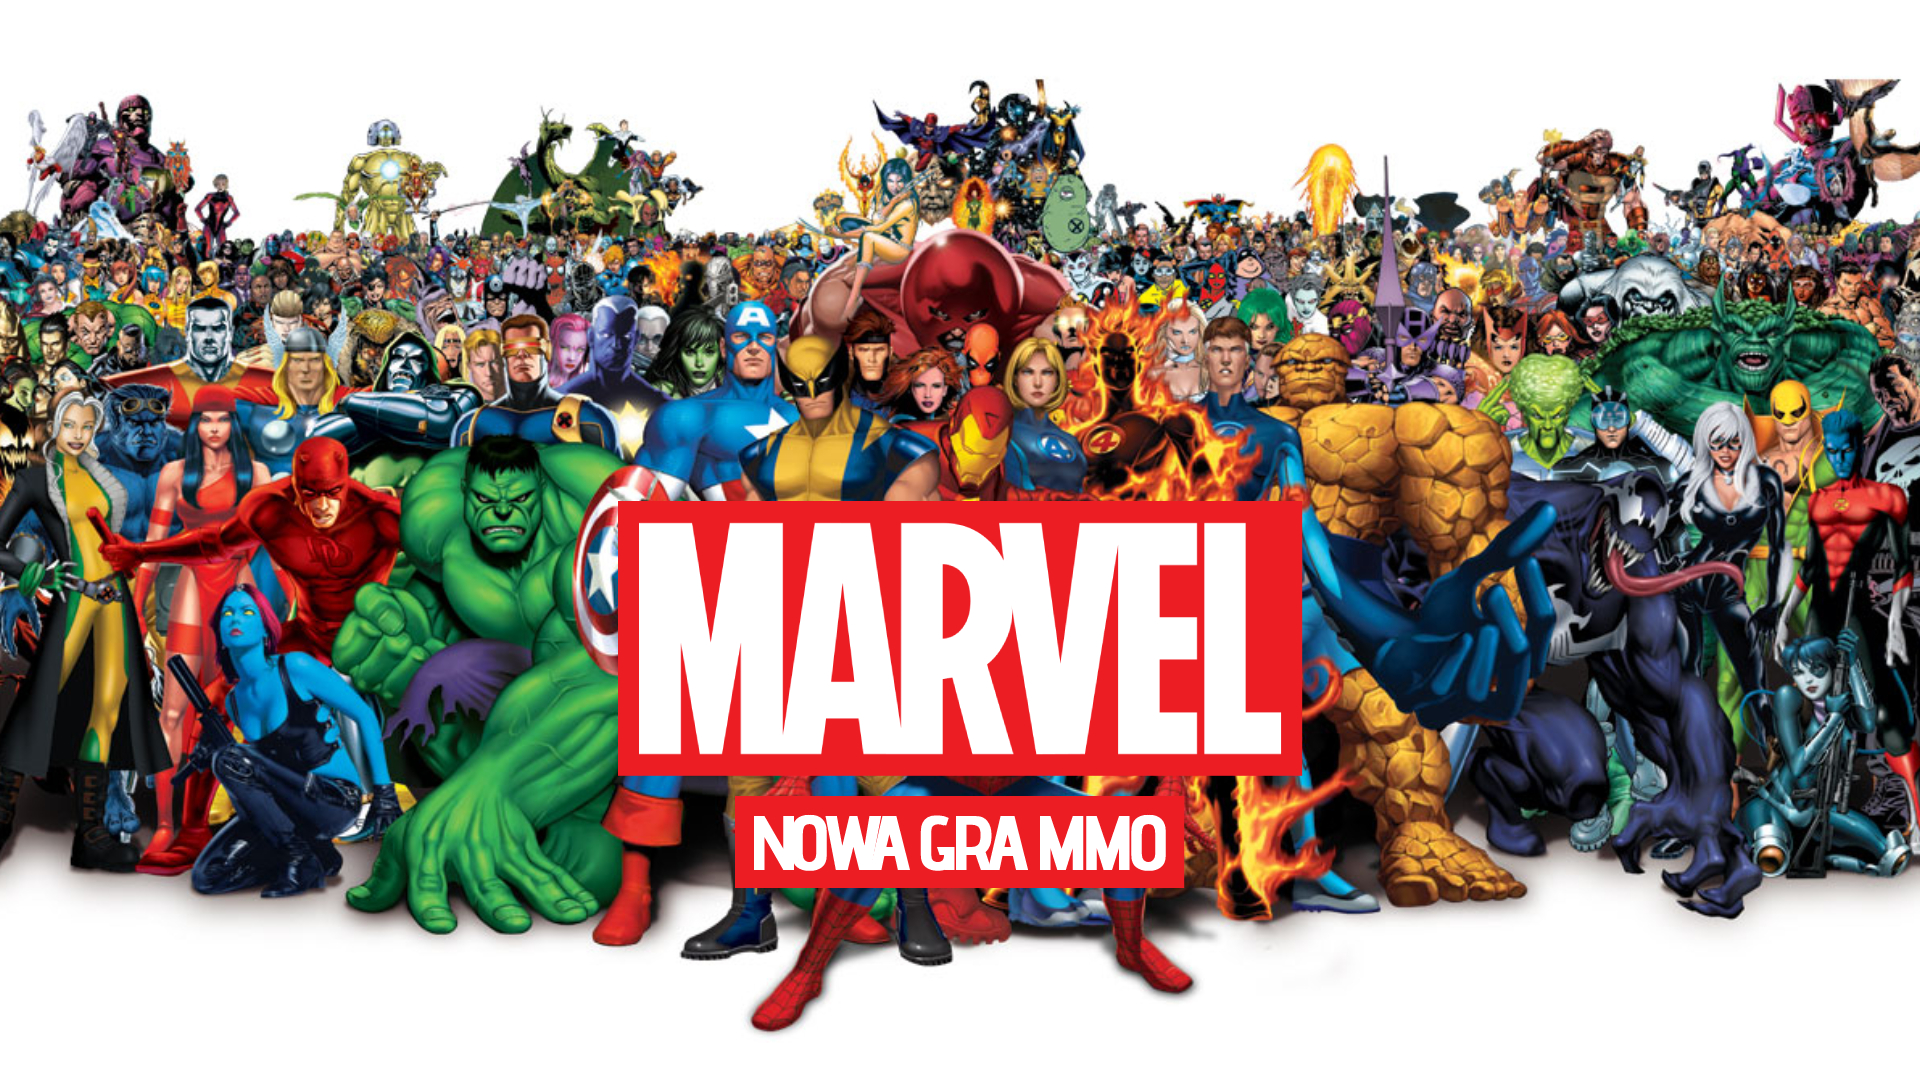 Marvel - nowa gra MMO